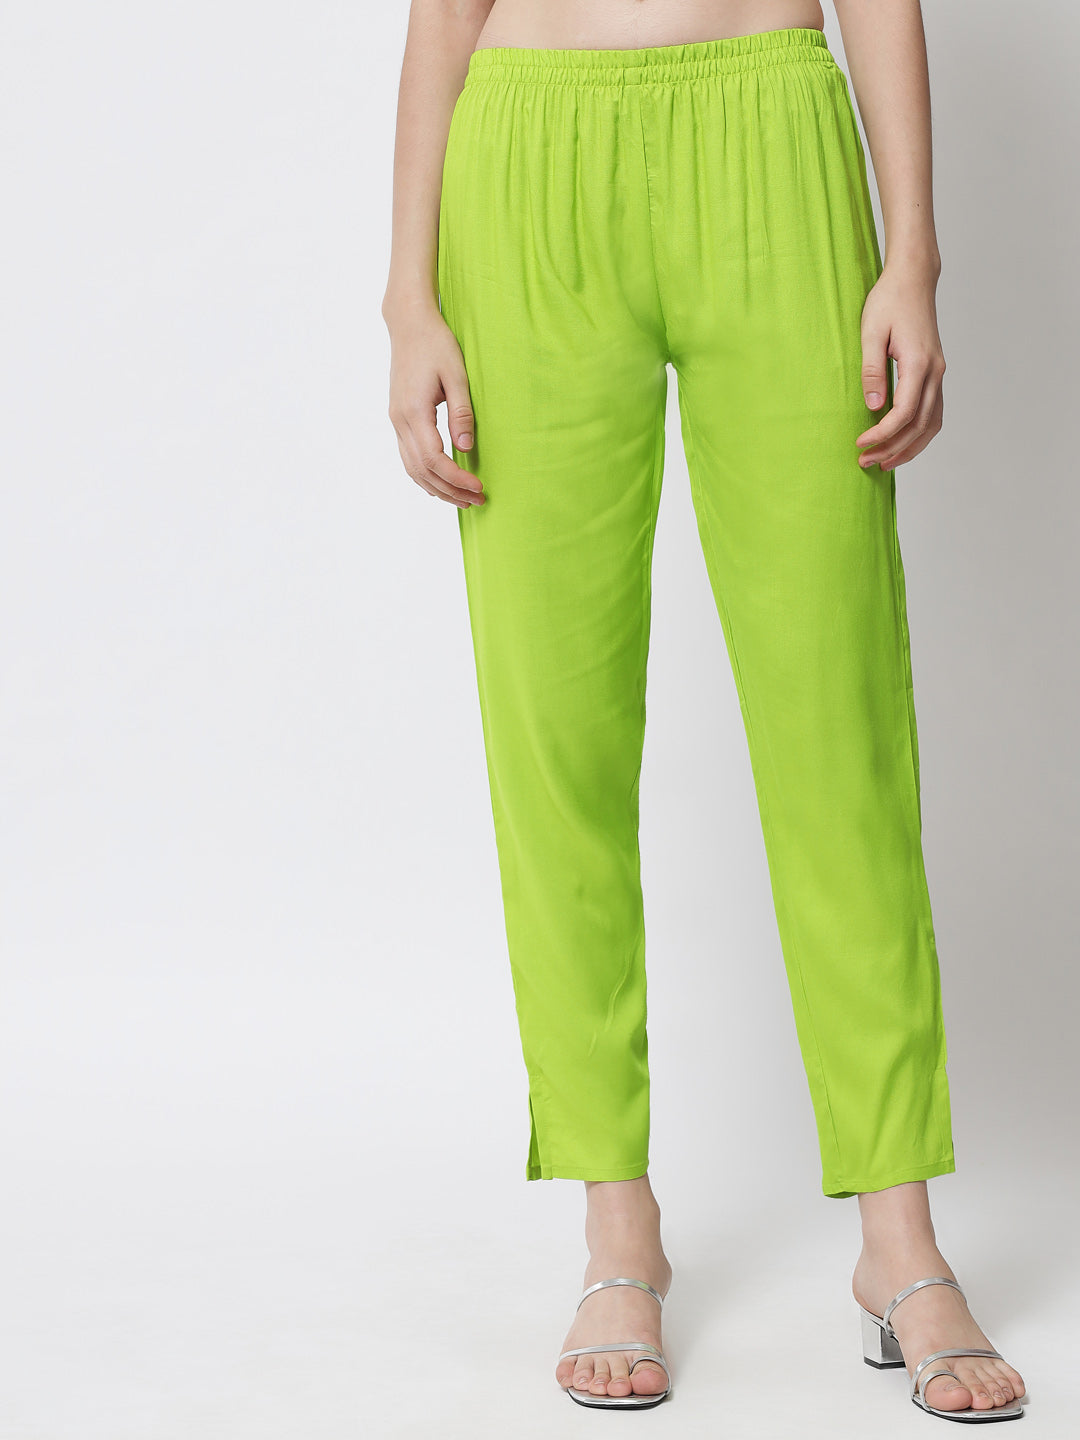 Women's Fluorescent Green Kurta With Trouser And Dupatta - Meeranshi